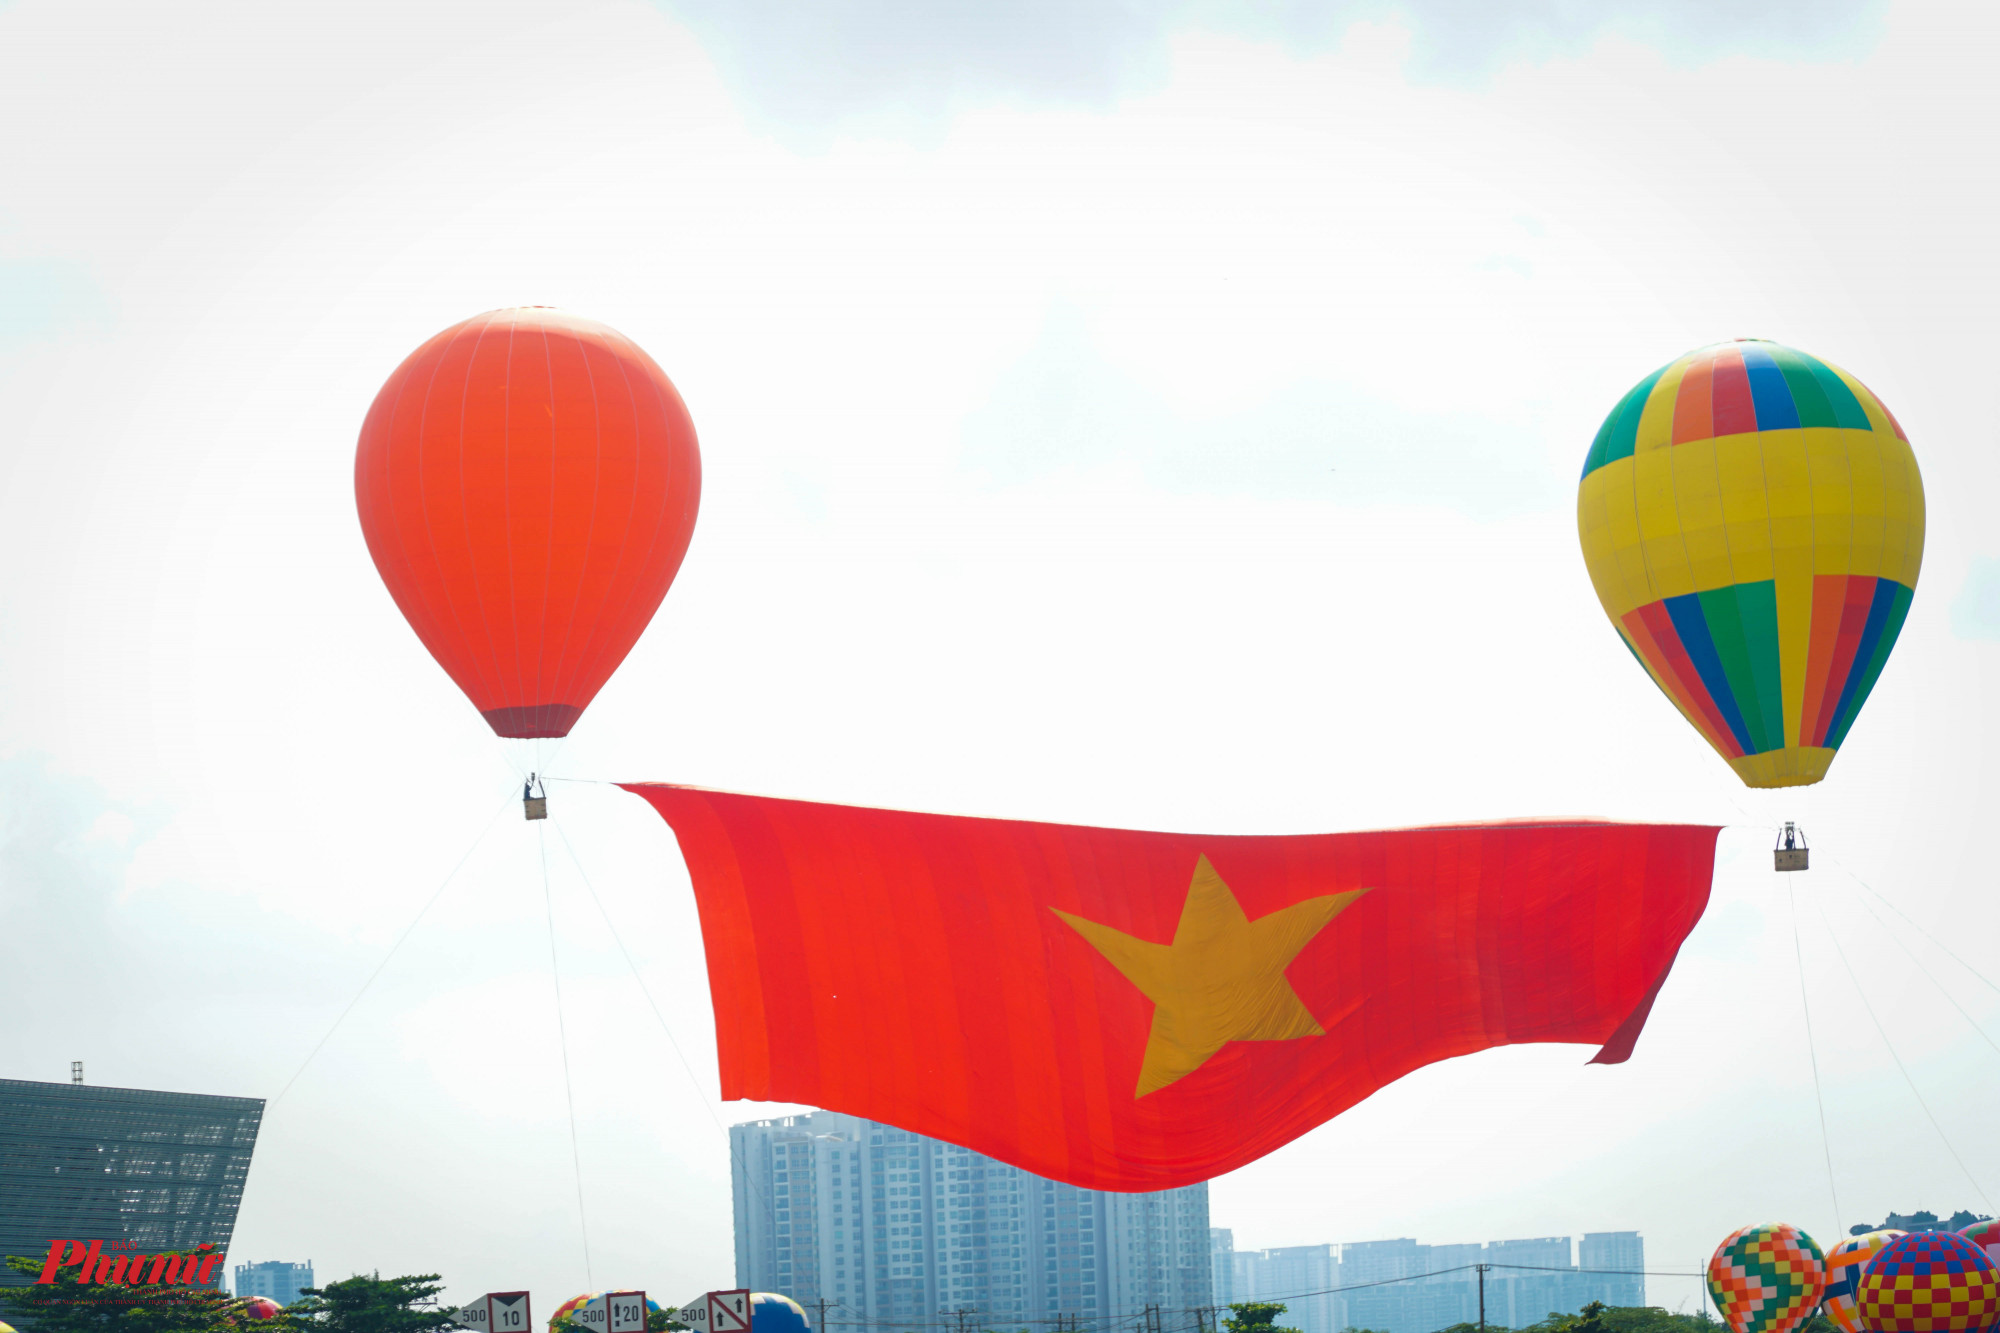 Đúng 8 giờ sáng ngày 2/9, 2 khinh khí cầu bay lên bầu trời kéo quốc kỳ rộng 1.800 m2 để chào mừng Quốc khánh 2/9, thay cho việc TP Hồ Chí Minh không đốt pháo hoa năm nay.